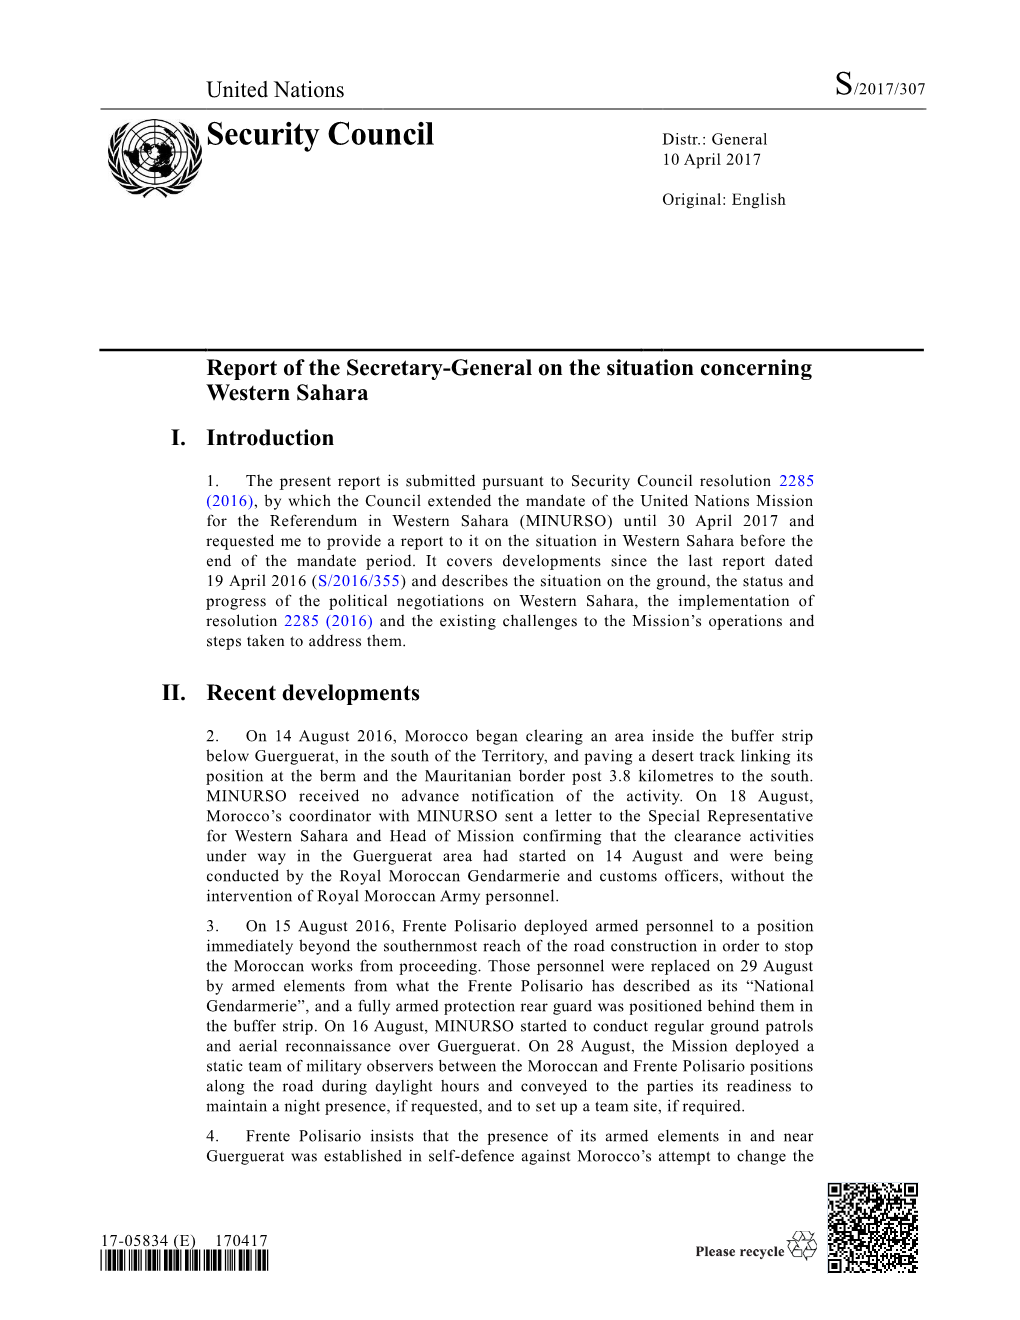 Security Council Distr.: General 10 April 2017